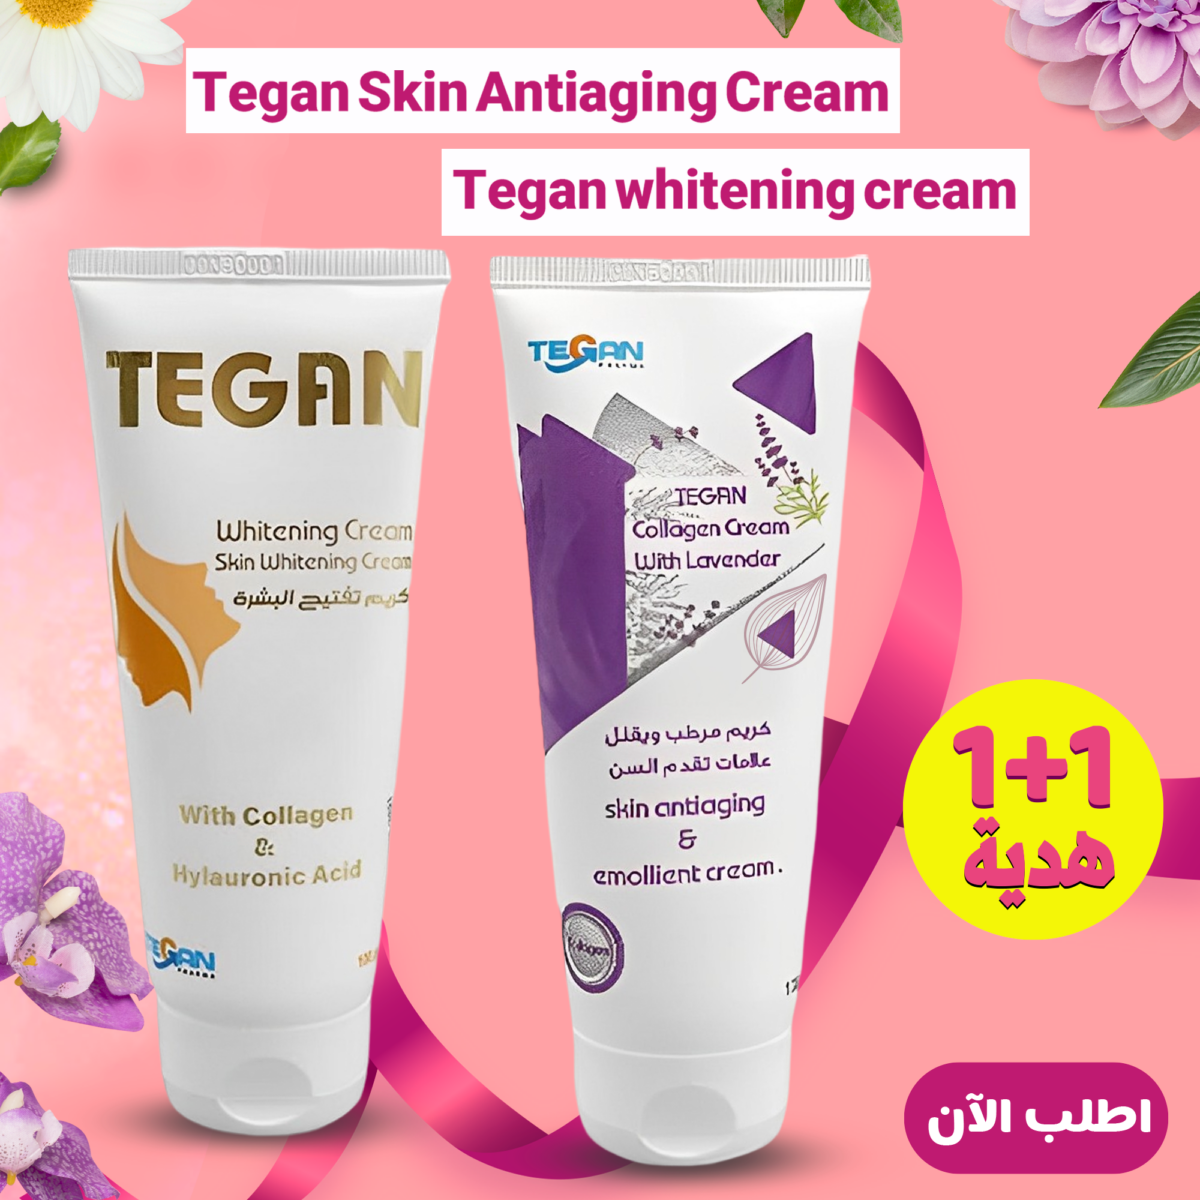 Tegan Skin Antiaging Cream + Tegan whitening cream